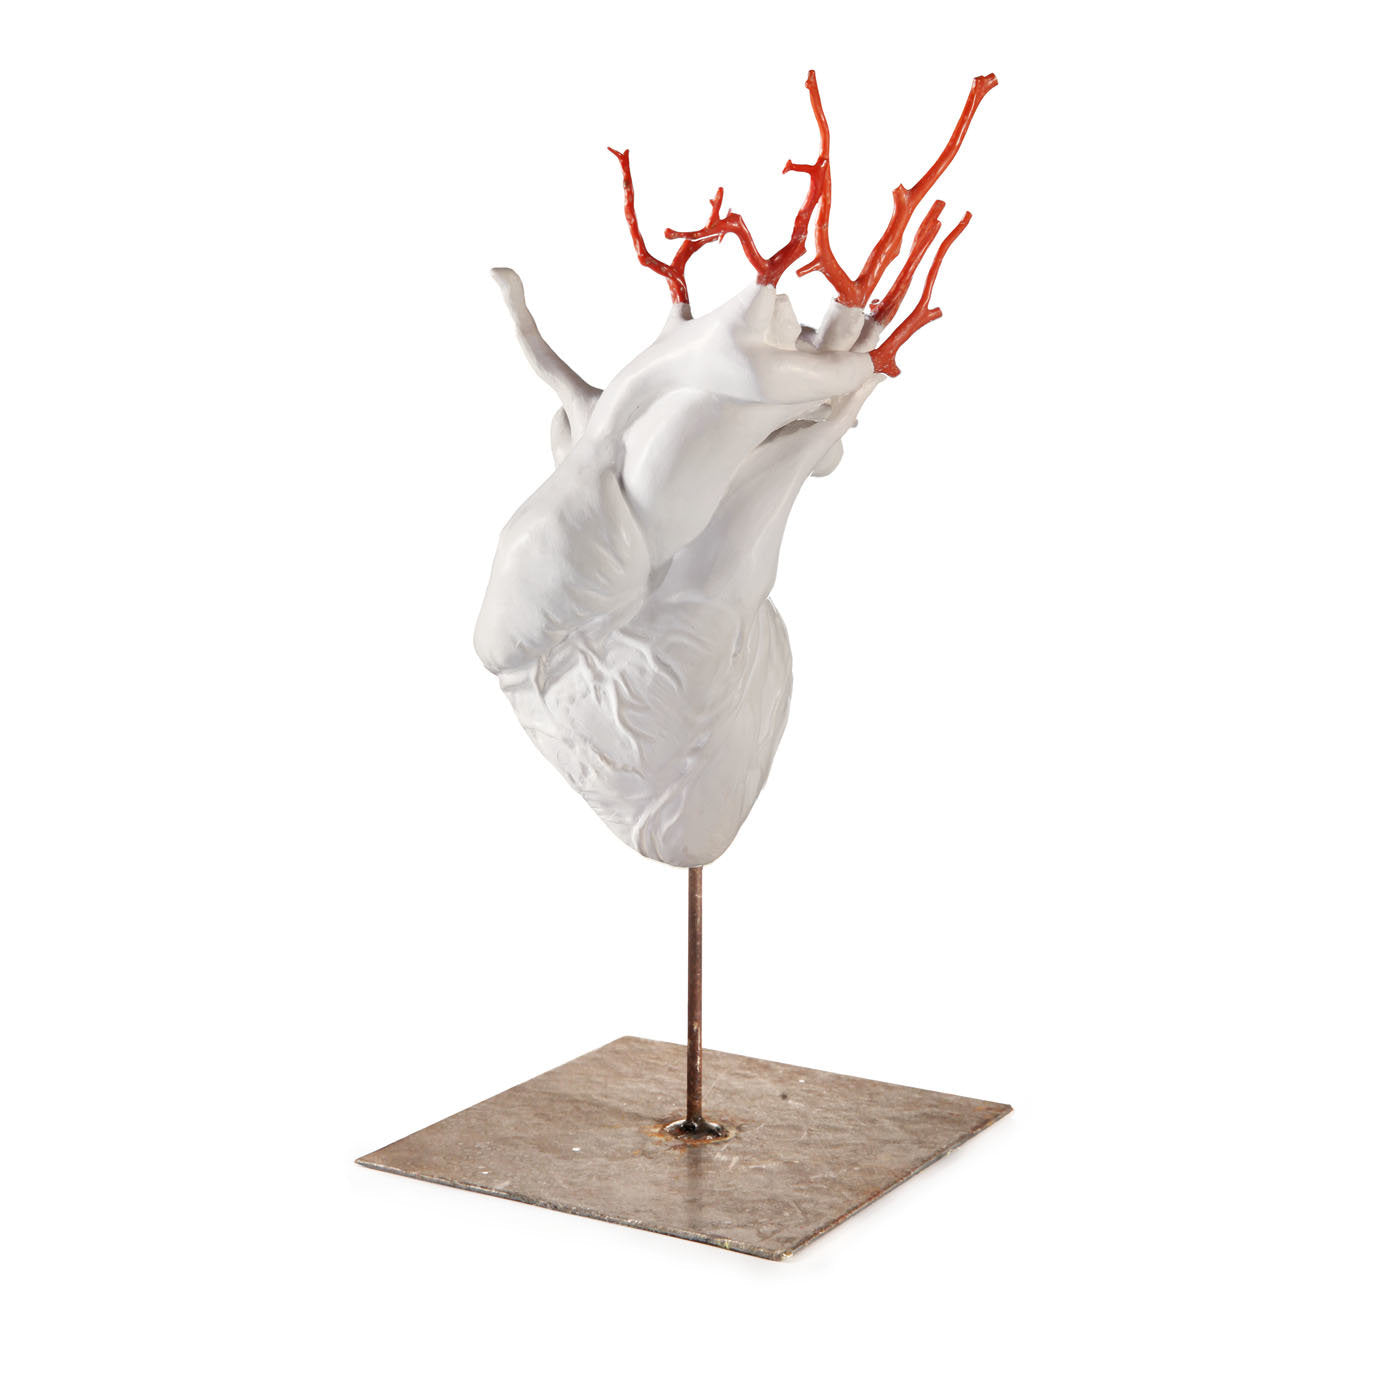 Heart Sculpture - Alternative view 1